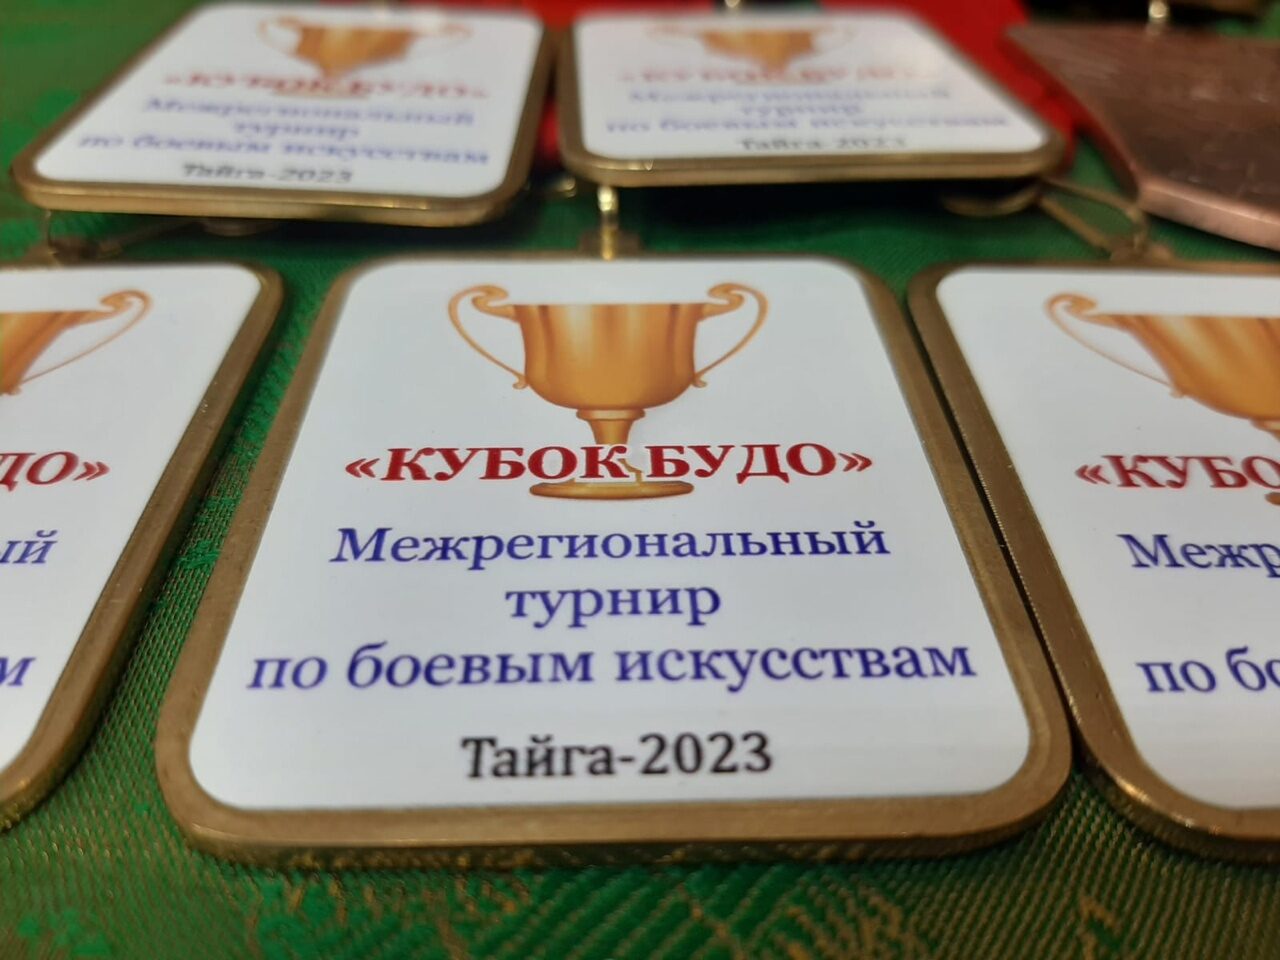 В Тайге состоялся 7-ой МЕЖРЕГИОНАЛЬНЫЙ ТУРНИР по боевым искусствам «КУБОК БУДО»